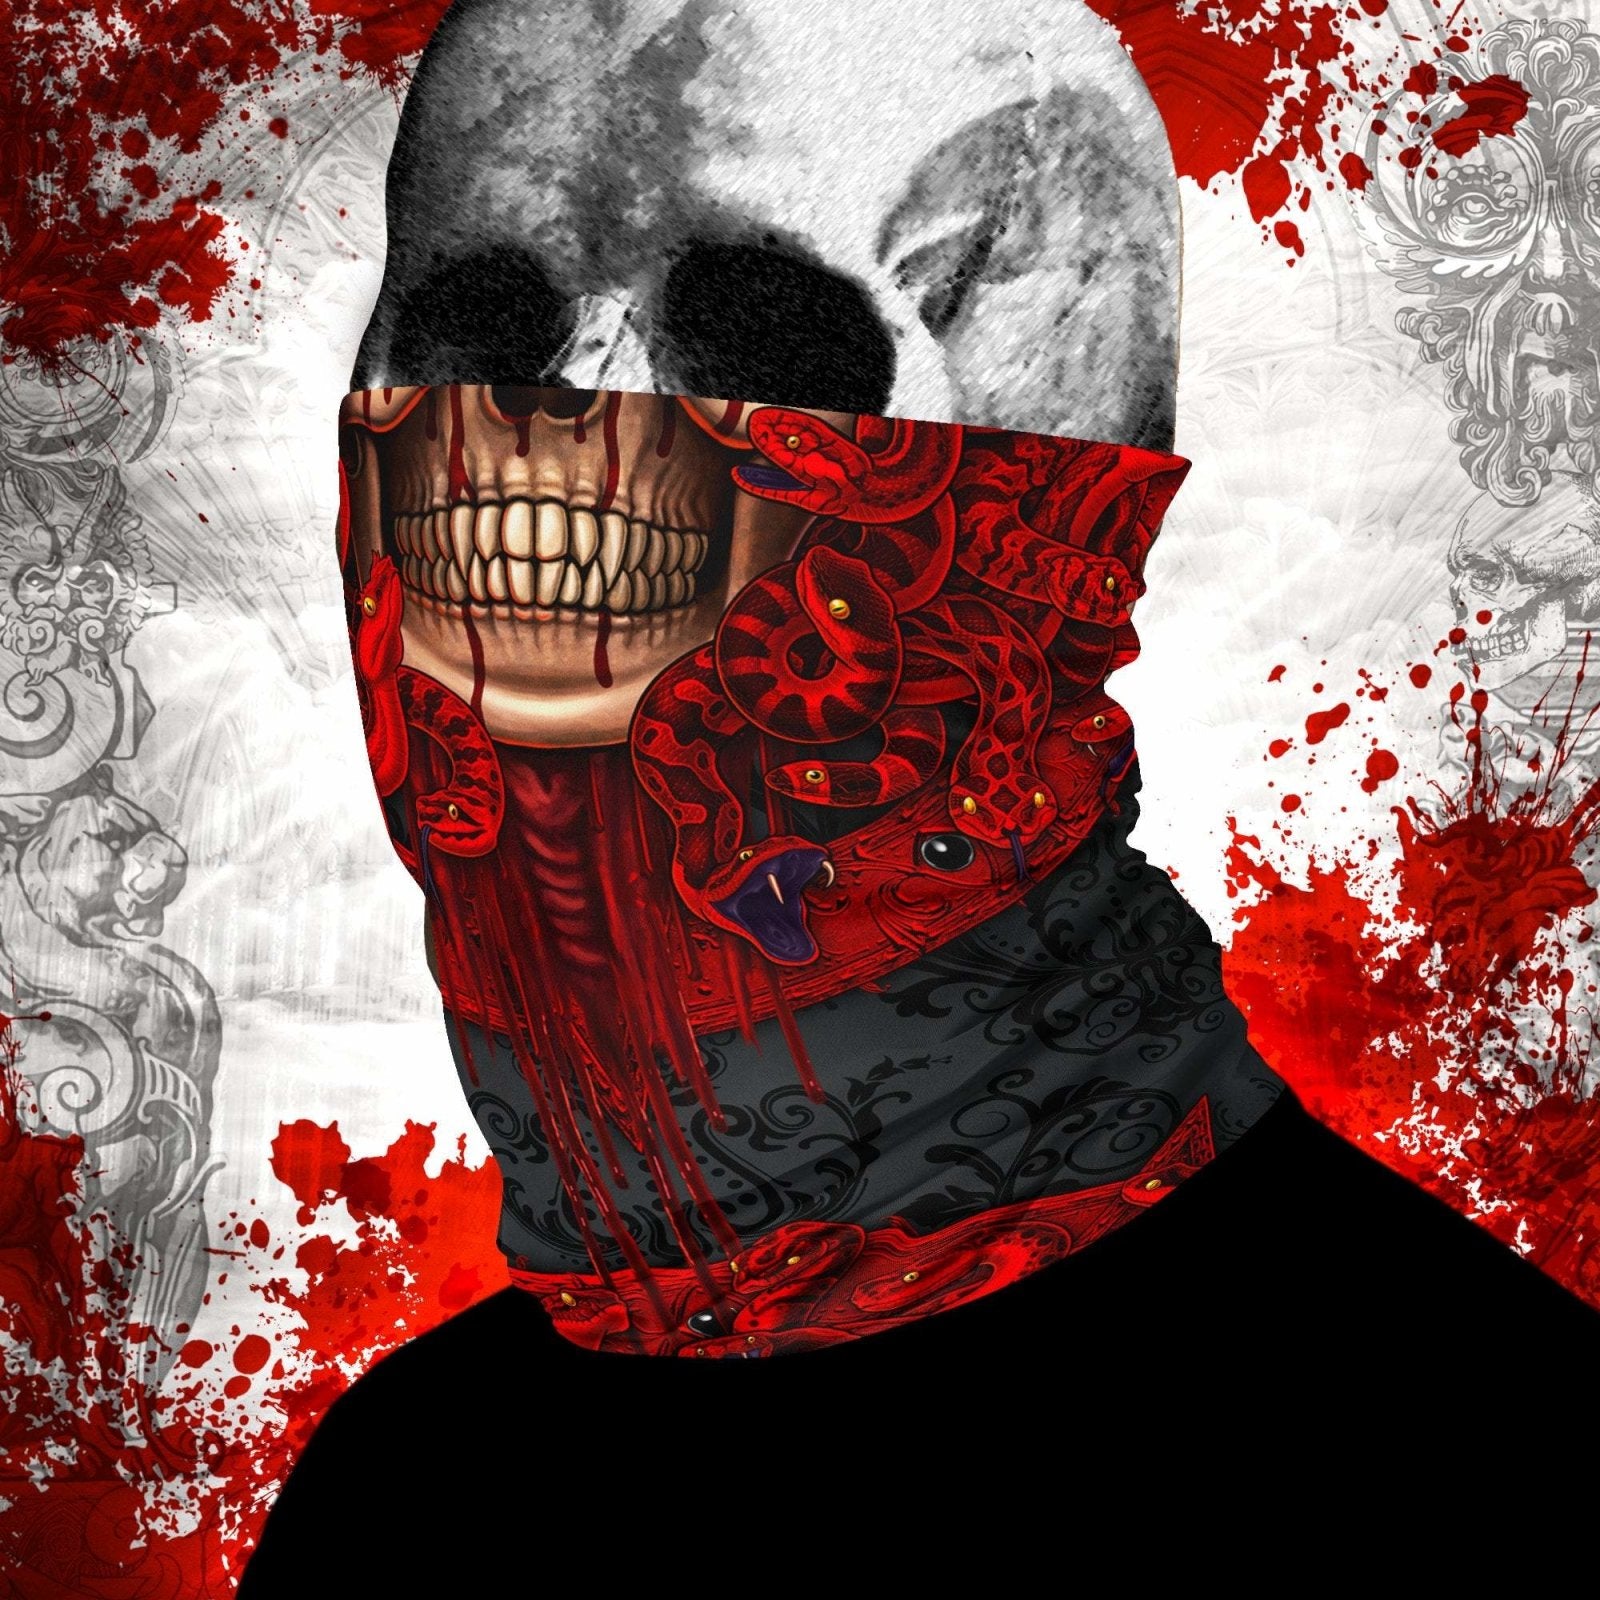 Demon Neck Gaiter, Face Mask, Head Covering, Snakes Headband, Medusa, Satanic, Skull Art - Pentagram, 3 Face Options - Abysm Internal